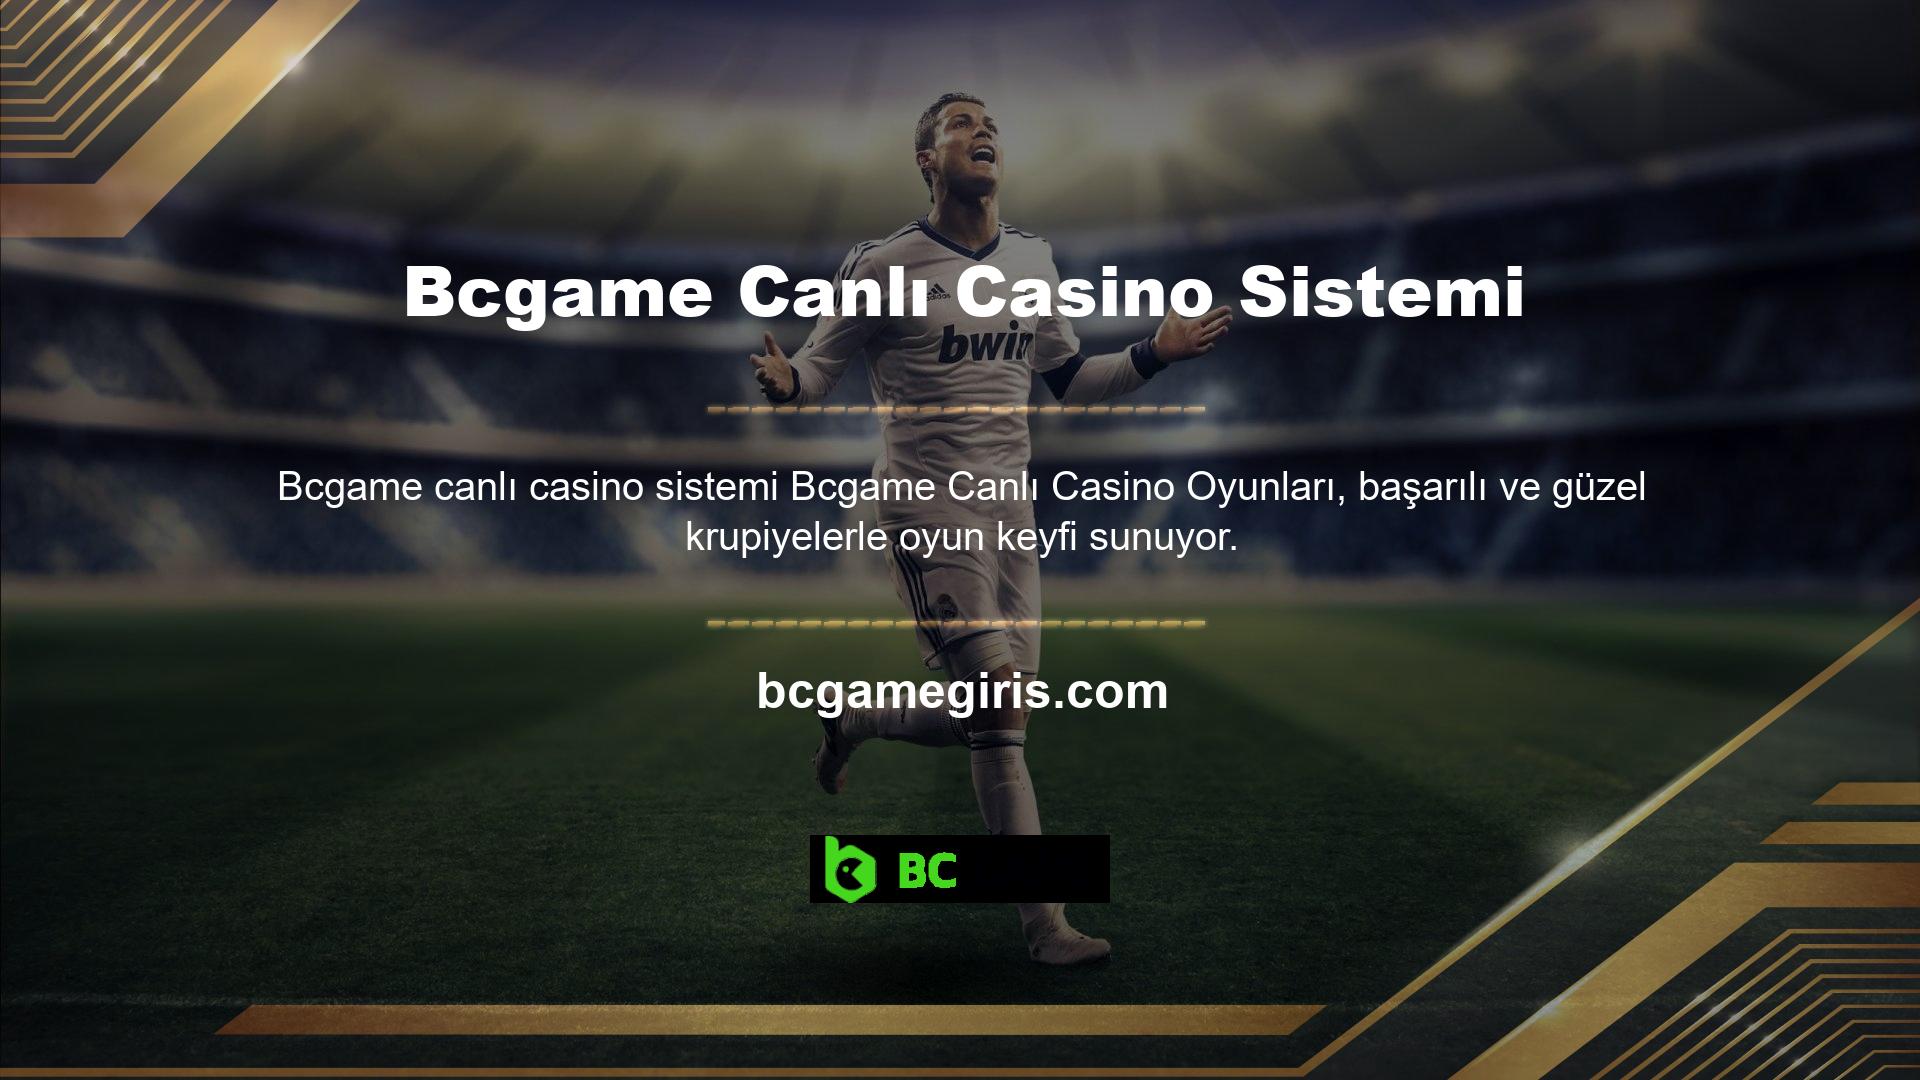 Blackjack ve poker oyunları, sitenin Bcgame canlı casino sistemindeki en popüler oyunlar arasında yer alır ve harika ödüller sunar